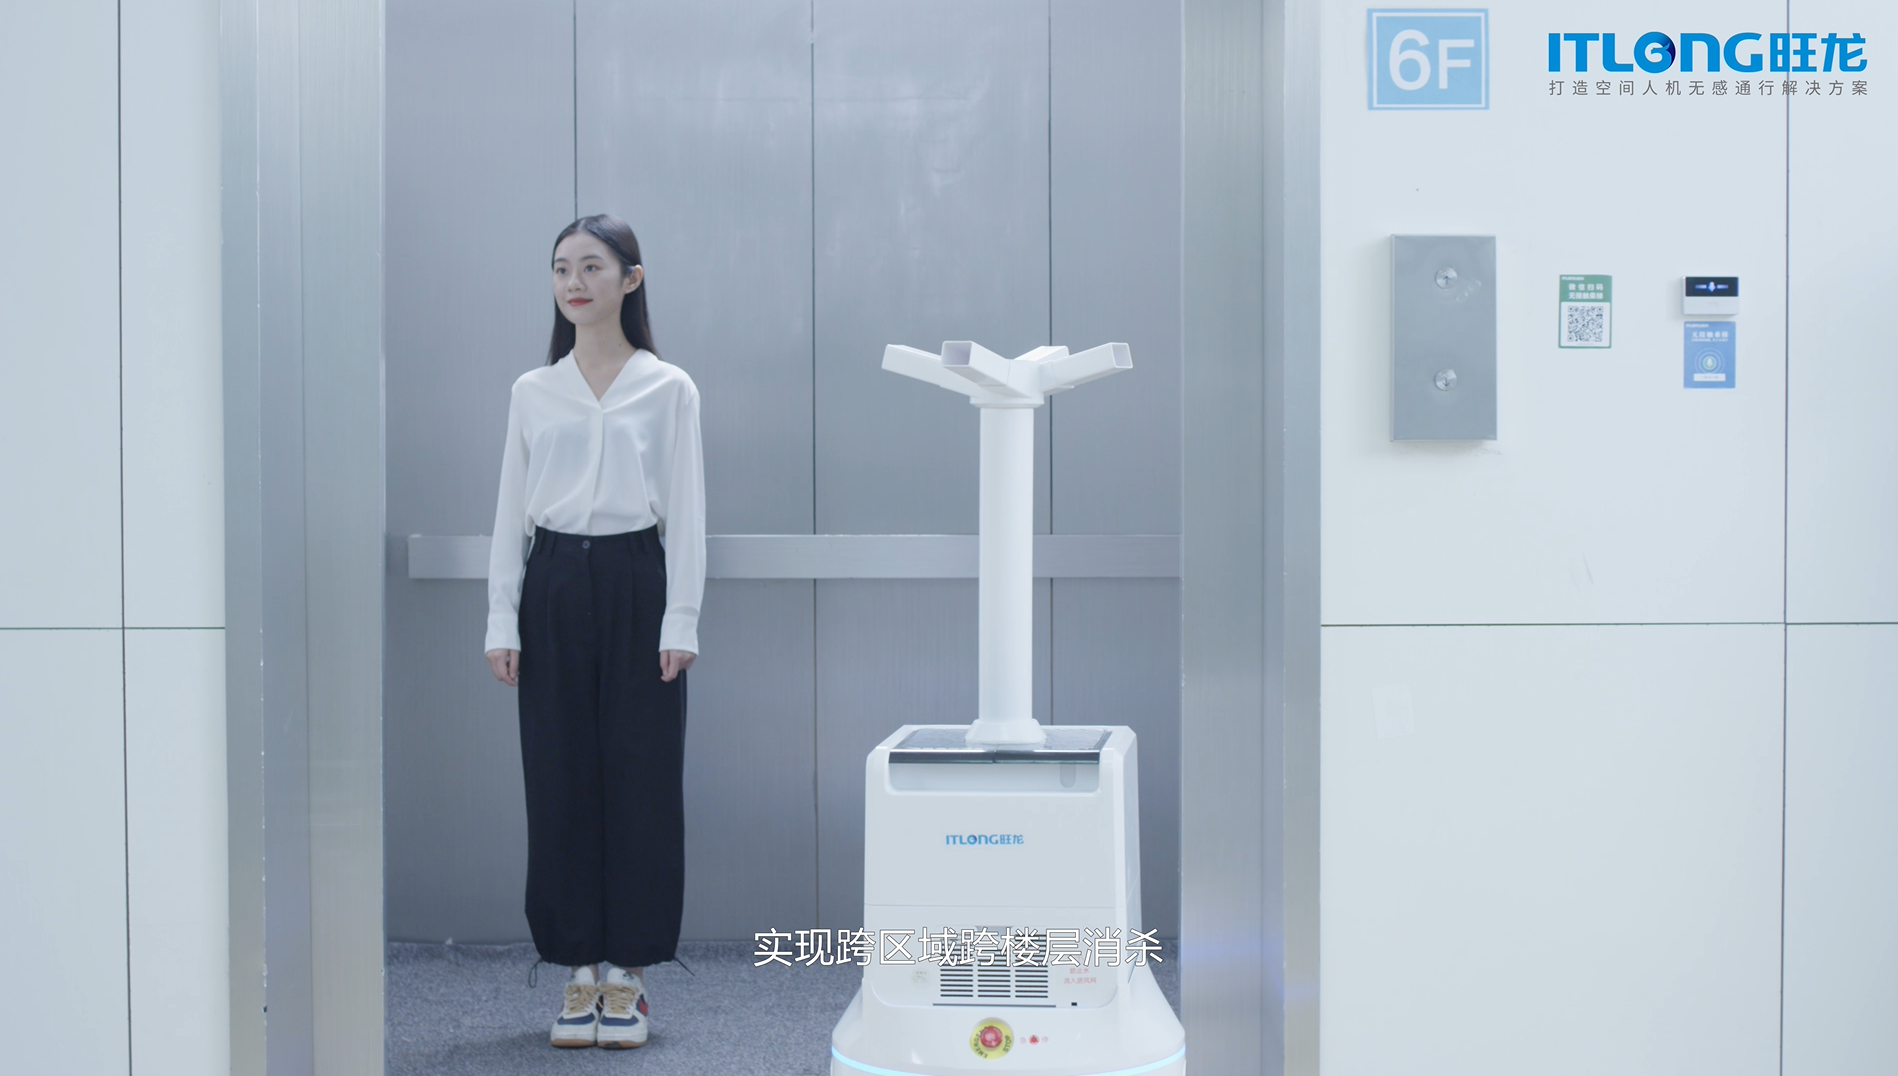 8087金沙娱场城四类机器人并用，实现真正智能化的医院场景人机无感通行解决方案